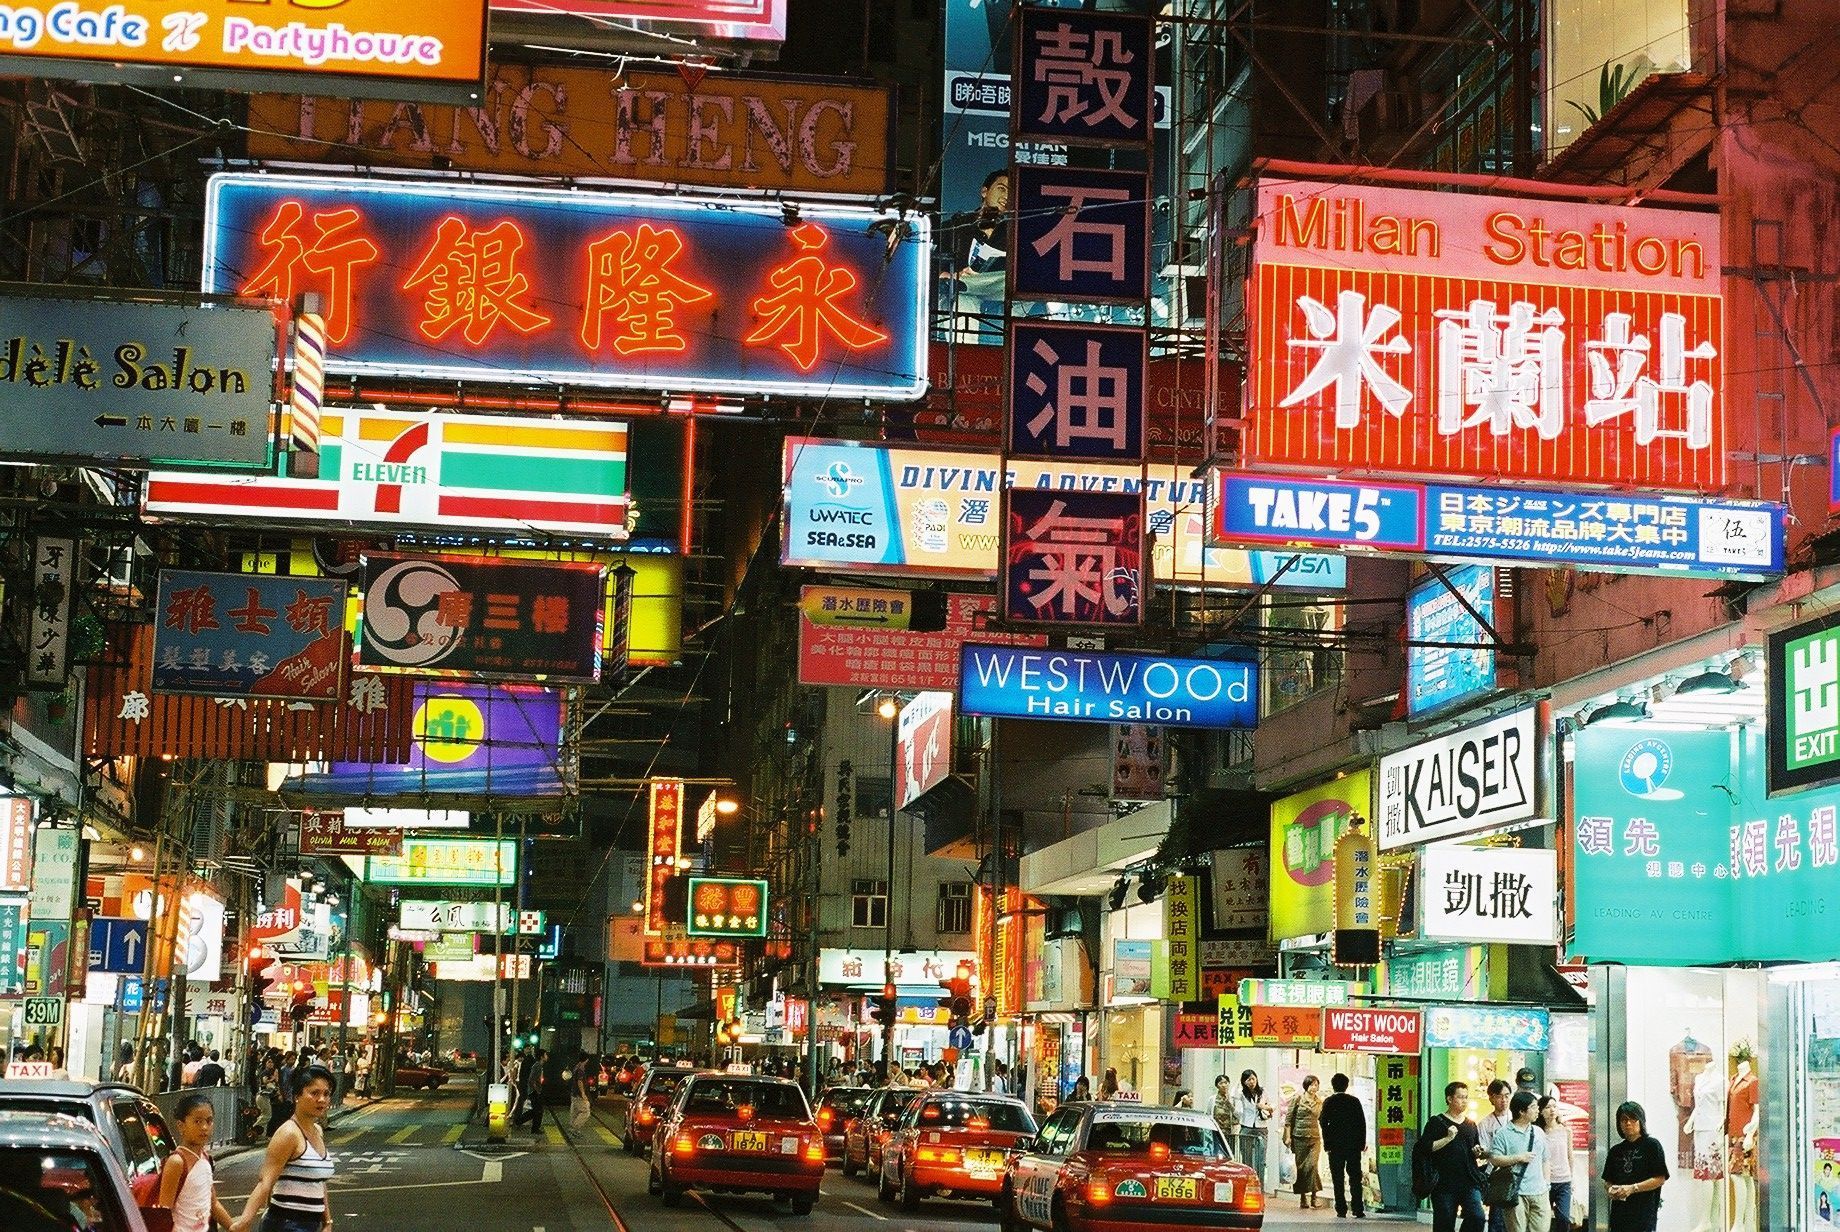 Khám phá những tấm ảnh nền Hong Kong street wallpapers hoàn toàn miễn phí. Với ánh đèn lung linh đầy sáng tạo, bạn sẽ bị choáng ngợp bởi vẻ đẹp của những con đường trung tâm đầy sôi động. Cùng tải về để tận hưởng trải nghiệm tuyệt vời này nhé.